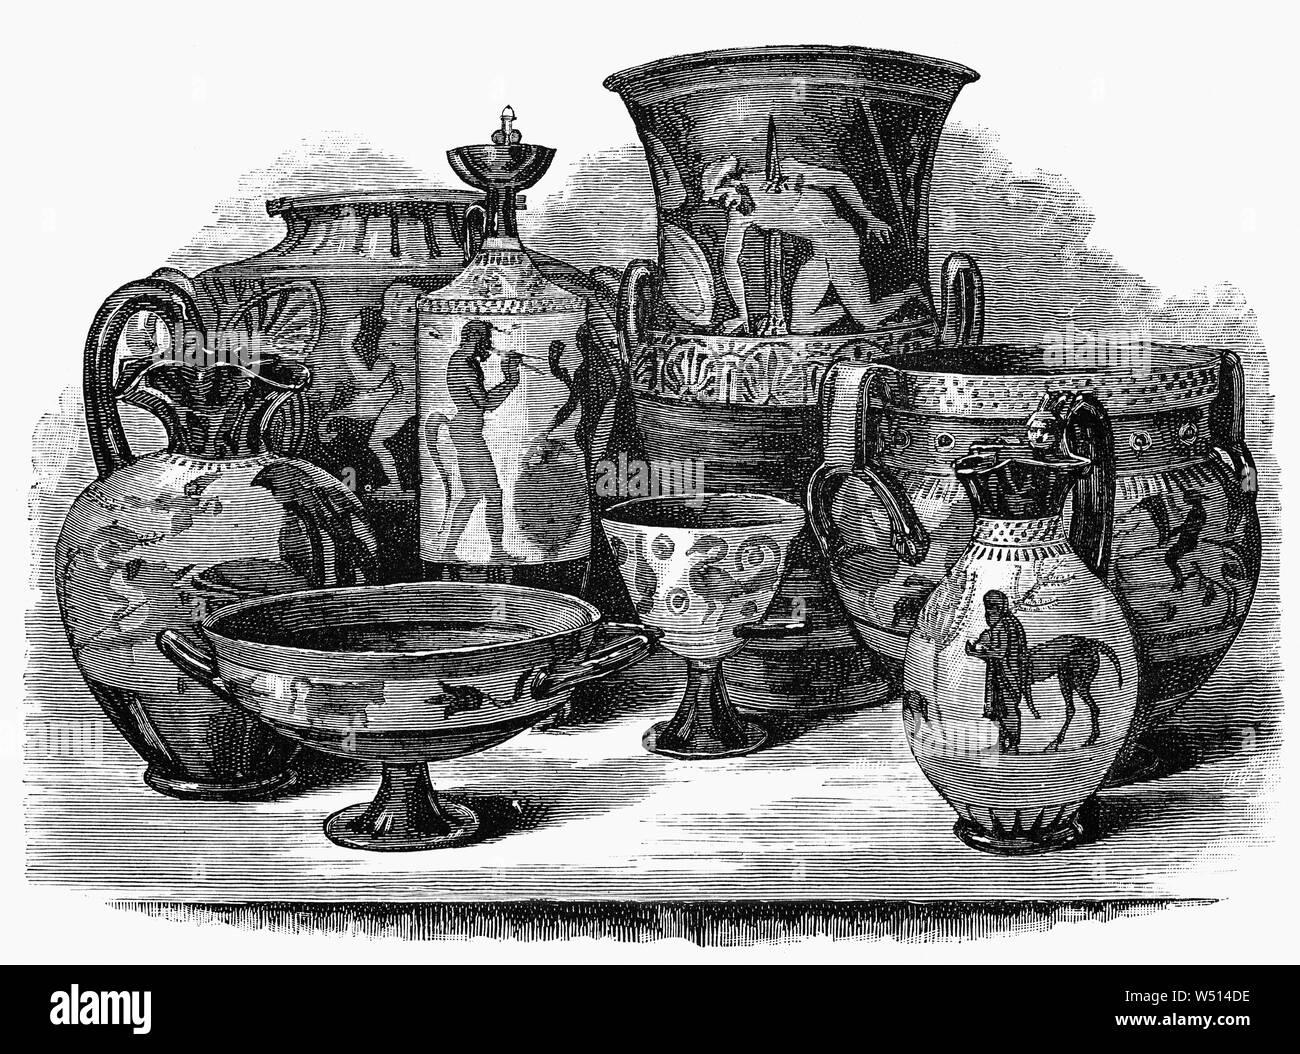 Vasen von der Etruskischen im Zentrum von Italien zwischen dem 9. und 2. Jahrhundert v. Chr. von griechischen Vase Malerei beeinflusst wurden produziert, mit den gleichen Techniken und weitgehend die gleichen Formen. Sowohl die Schwarz-Abbildung vase Malerei und später Rot - Abbildung vase Maltechniken verwendet wurden. Die Themen waren auch sehr oft aus der griechischen Mythologie in späteren Perioden erstellt. Es wurde vorgeschlagen, dass viele oder die meisten kunstvoll bemalte Vasen wurden speziell gekauft in Bestattungen verwendet werden, als Ersatz, billiger und weniger wahrscheinlich Räuber zu gewinnen, als die Schiffe in Silber und Bronze. Stockfoto